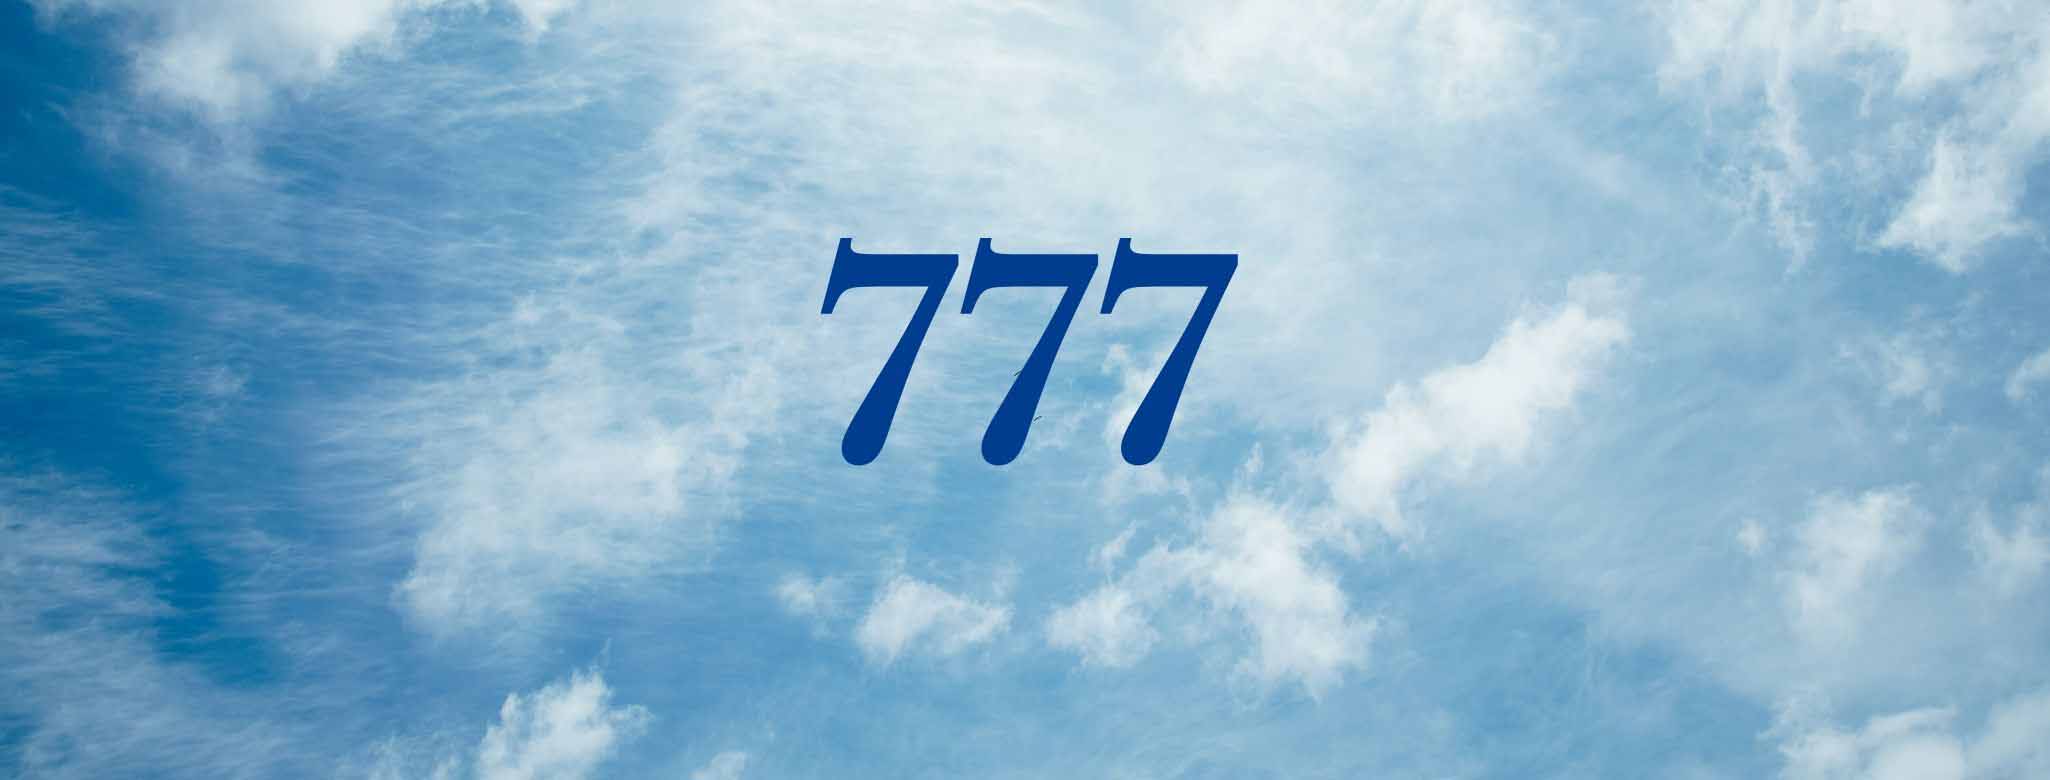 777 angel number